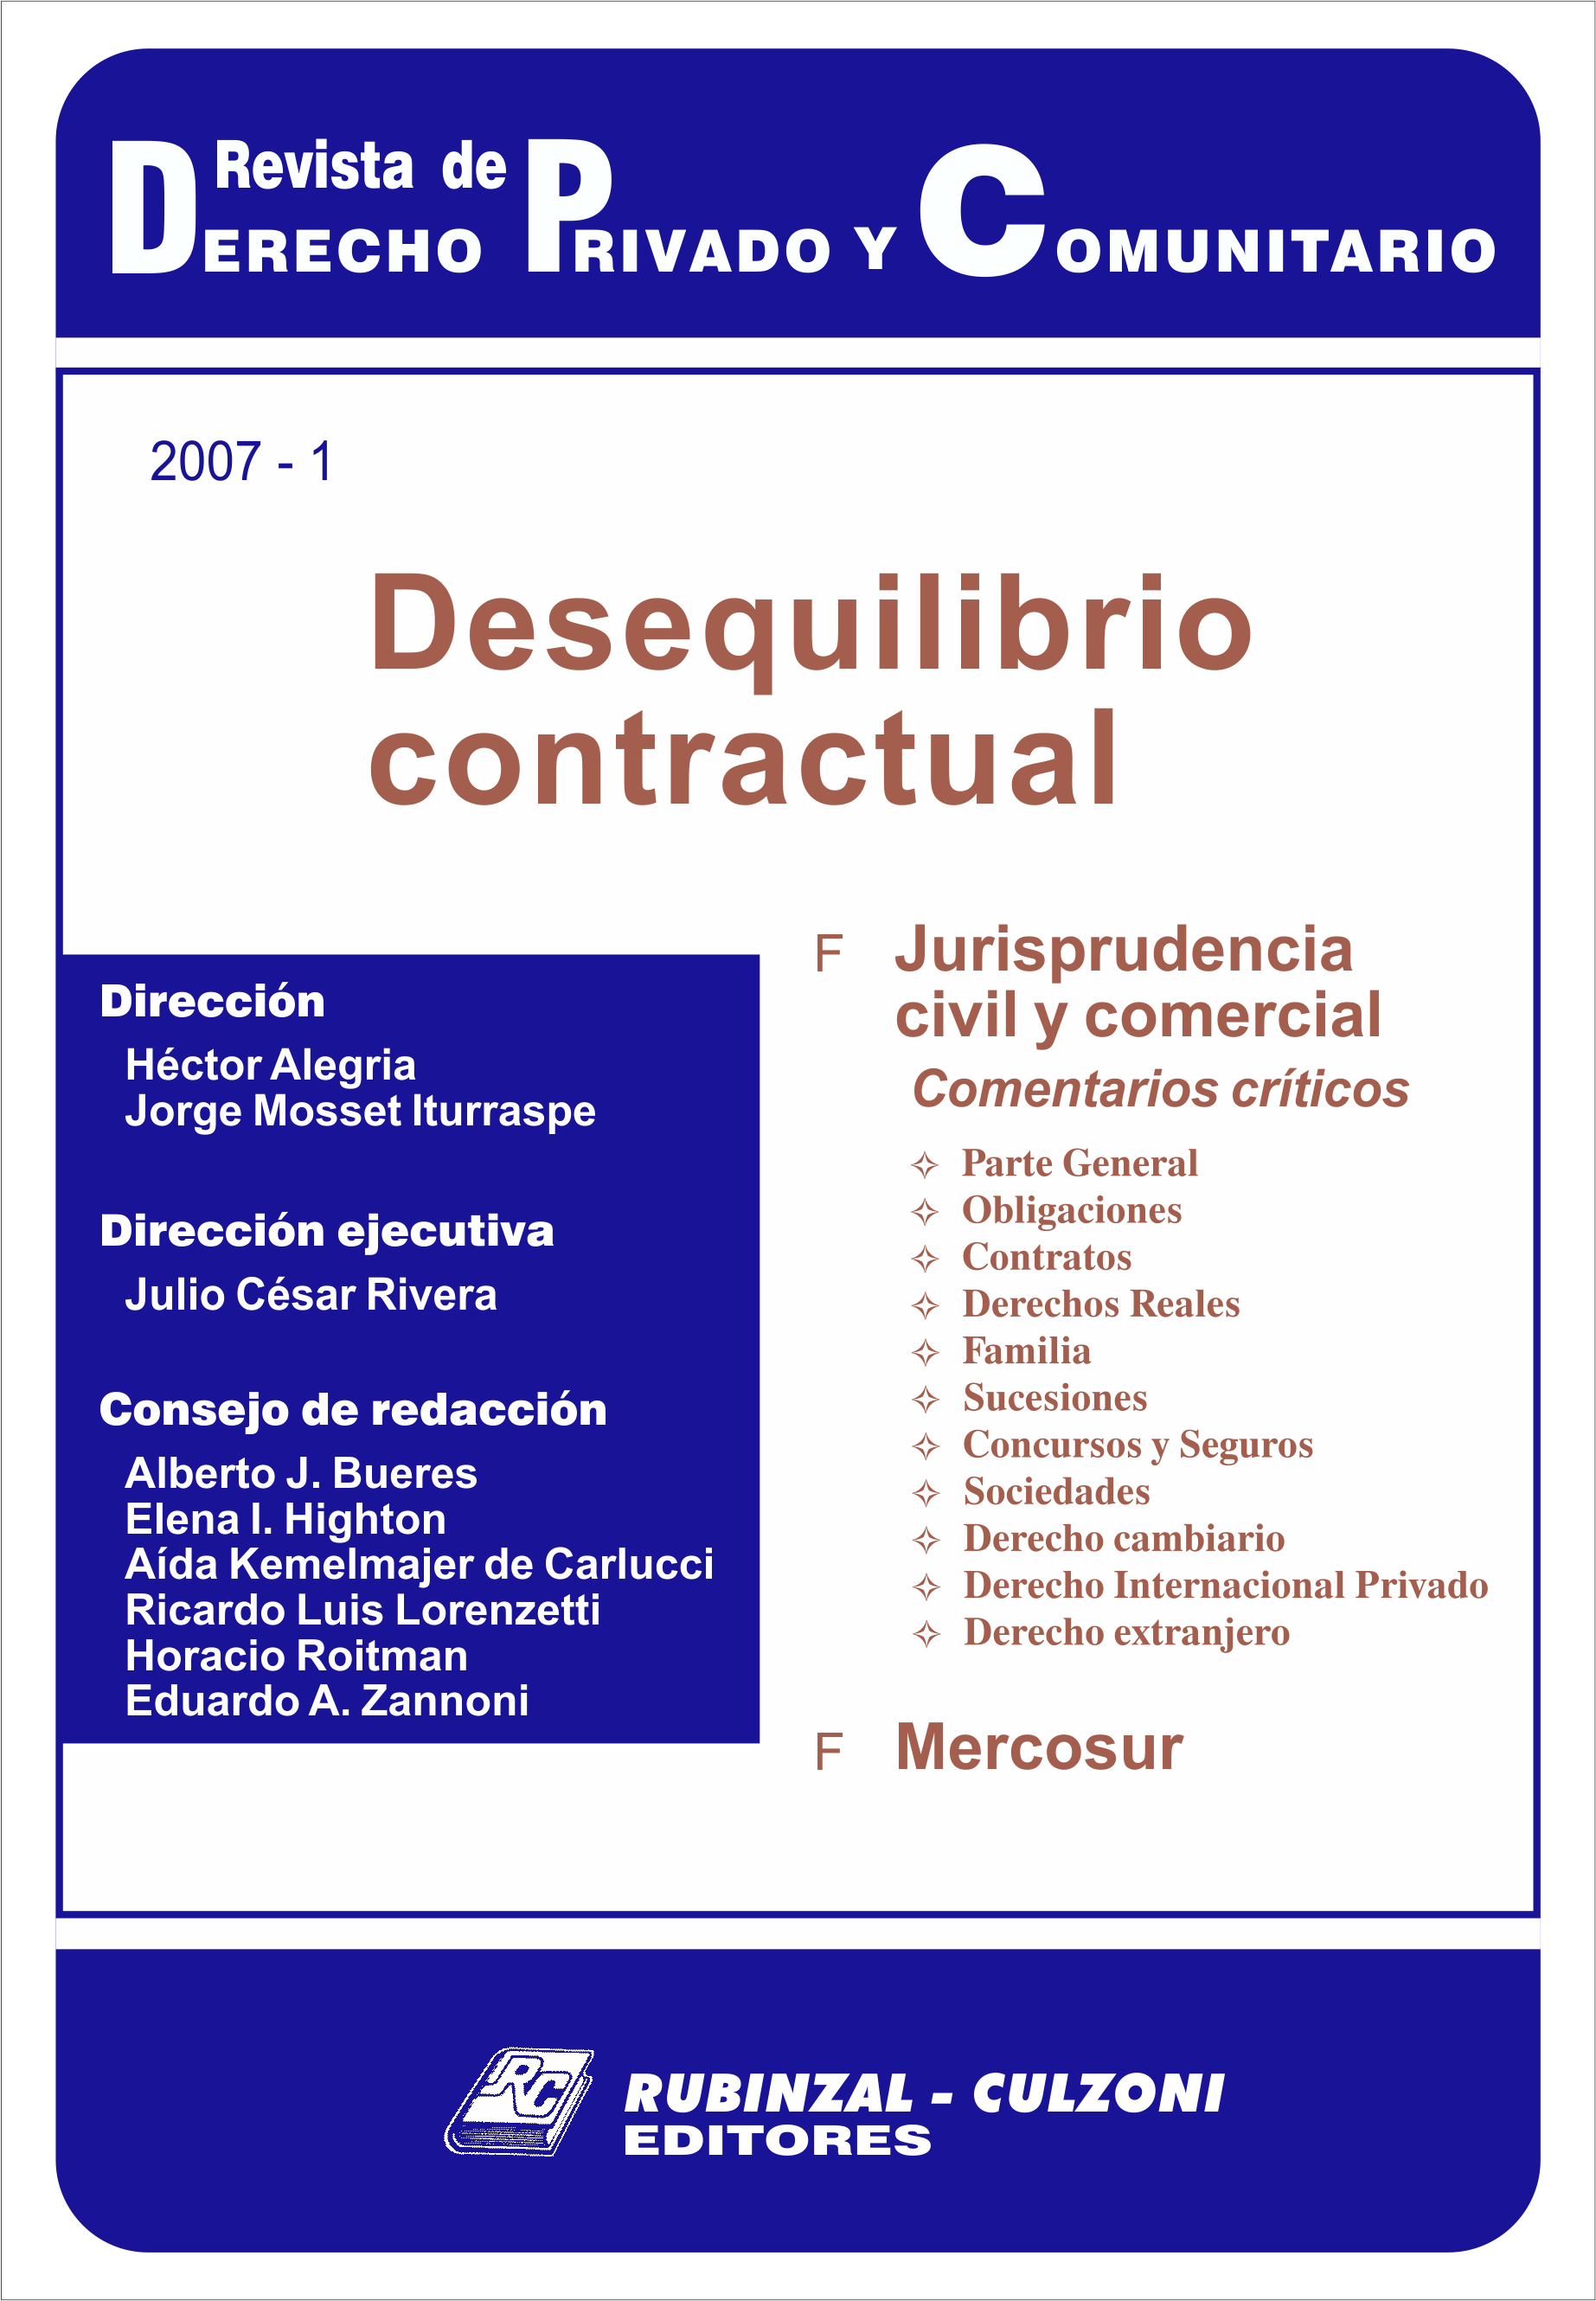 Revista de Derecho Privado y Comunitario - Desequilibrio contractual.